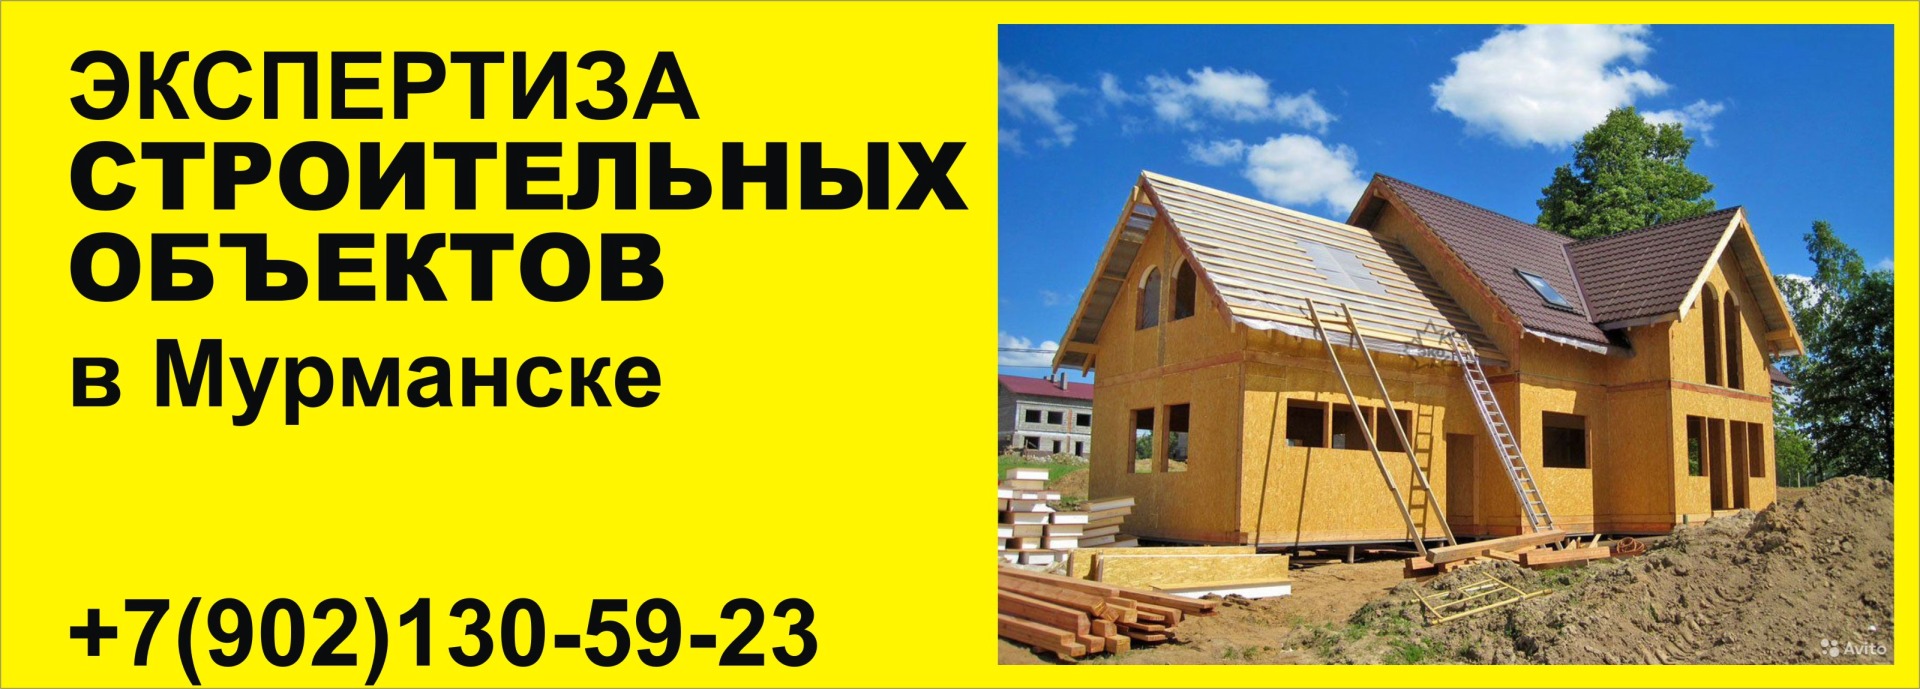 экспертиза строительства домов зданий и сооружений в Мурманске для суда и внесудебные